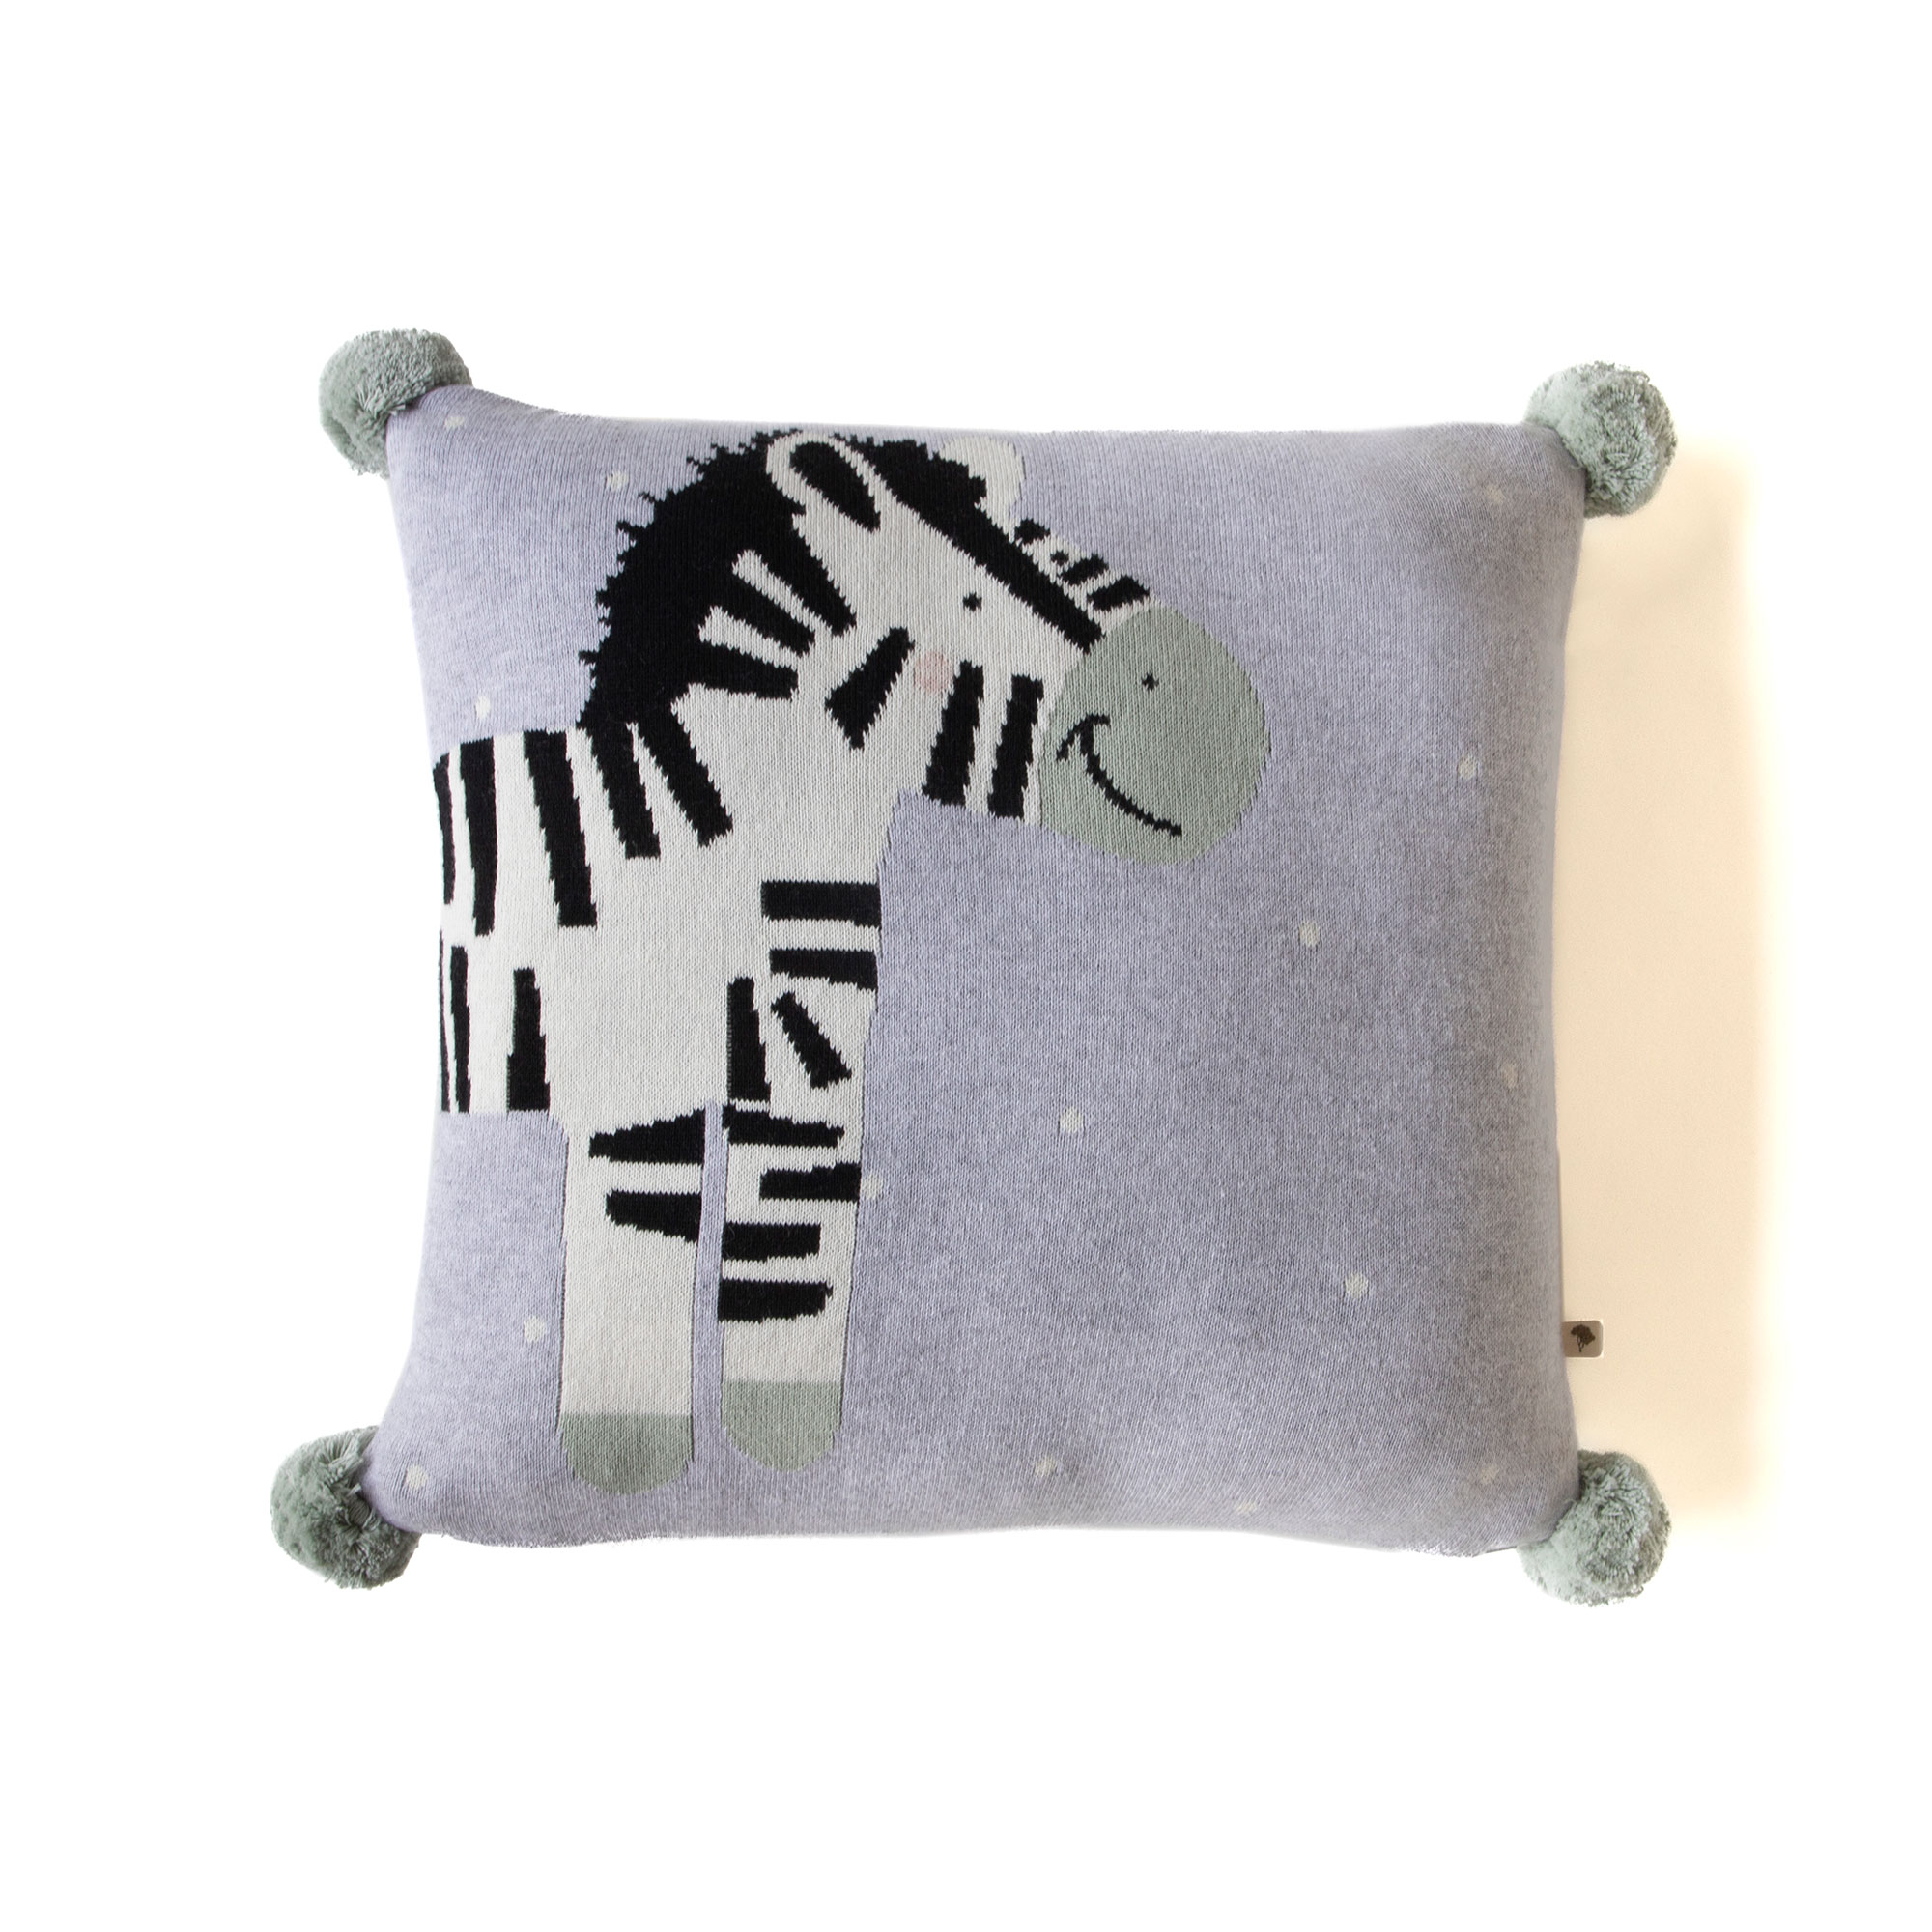 Daydreaming Zebra Cushion Cover